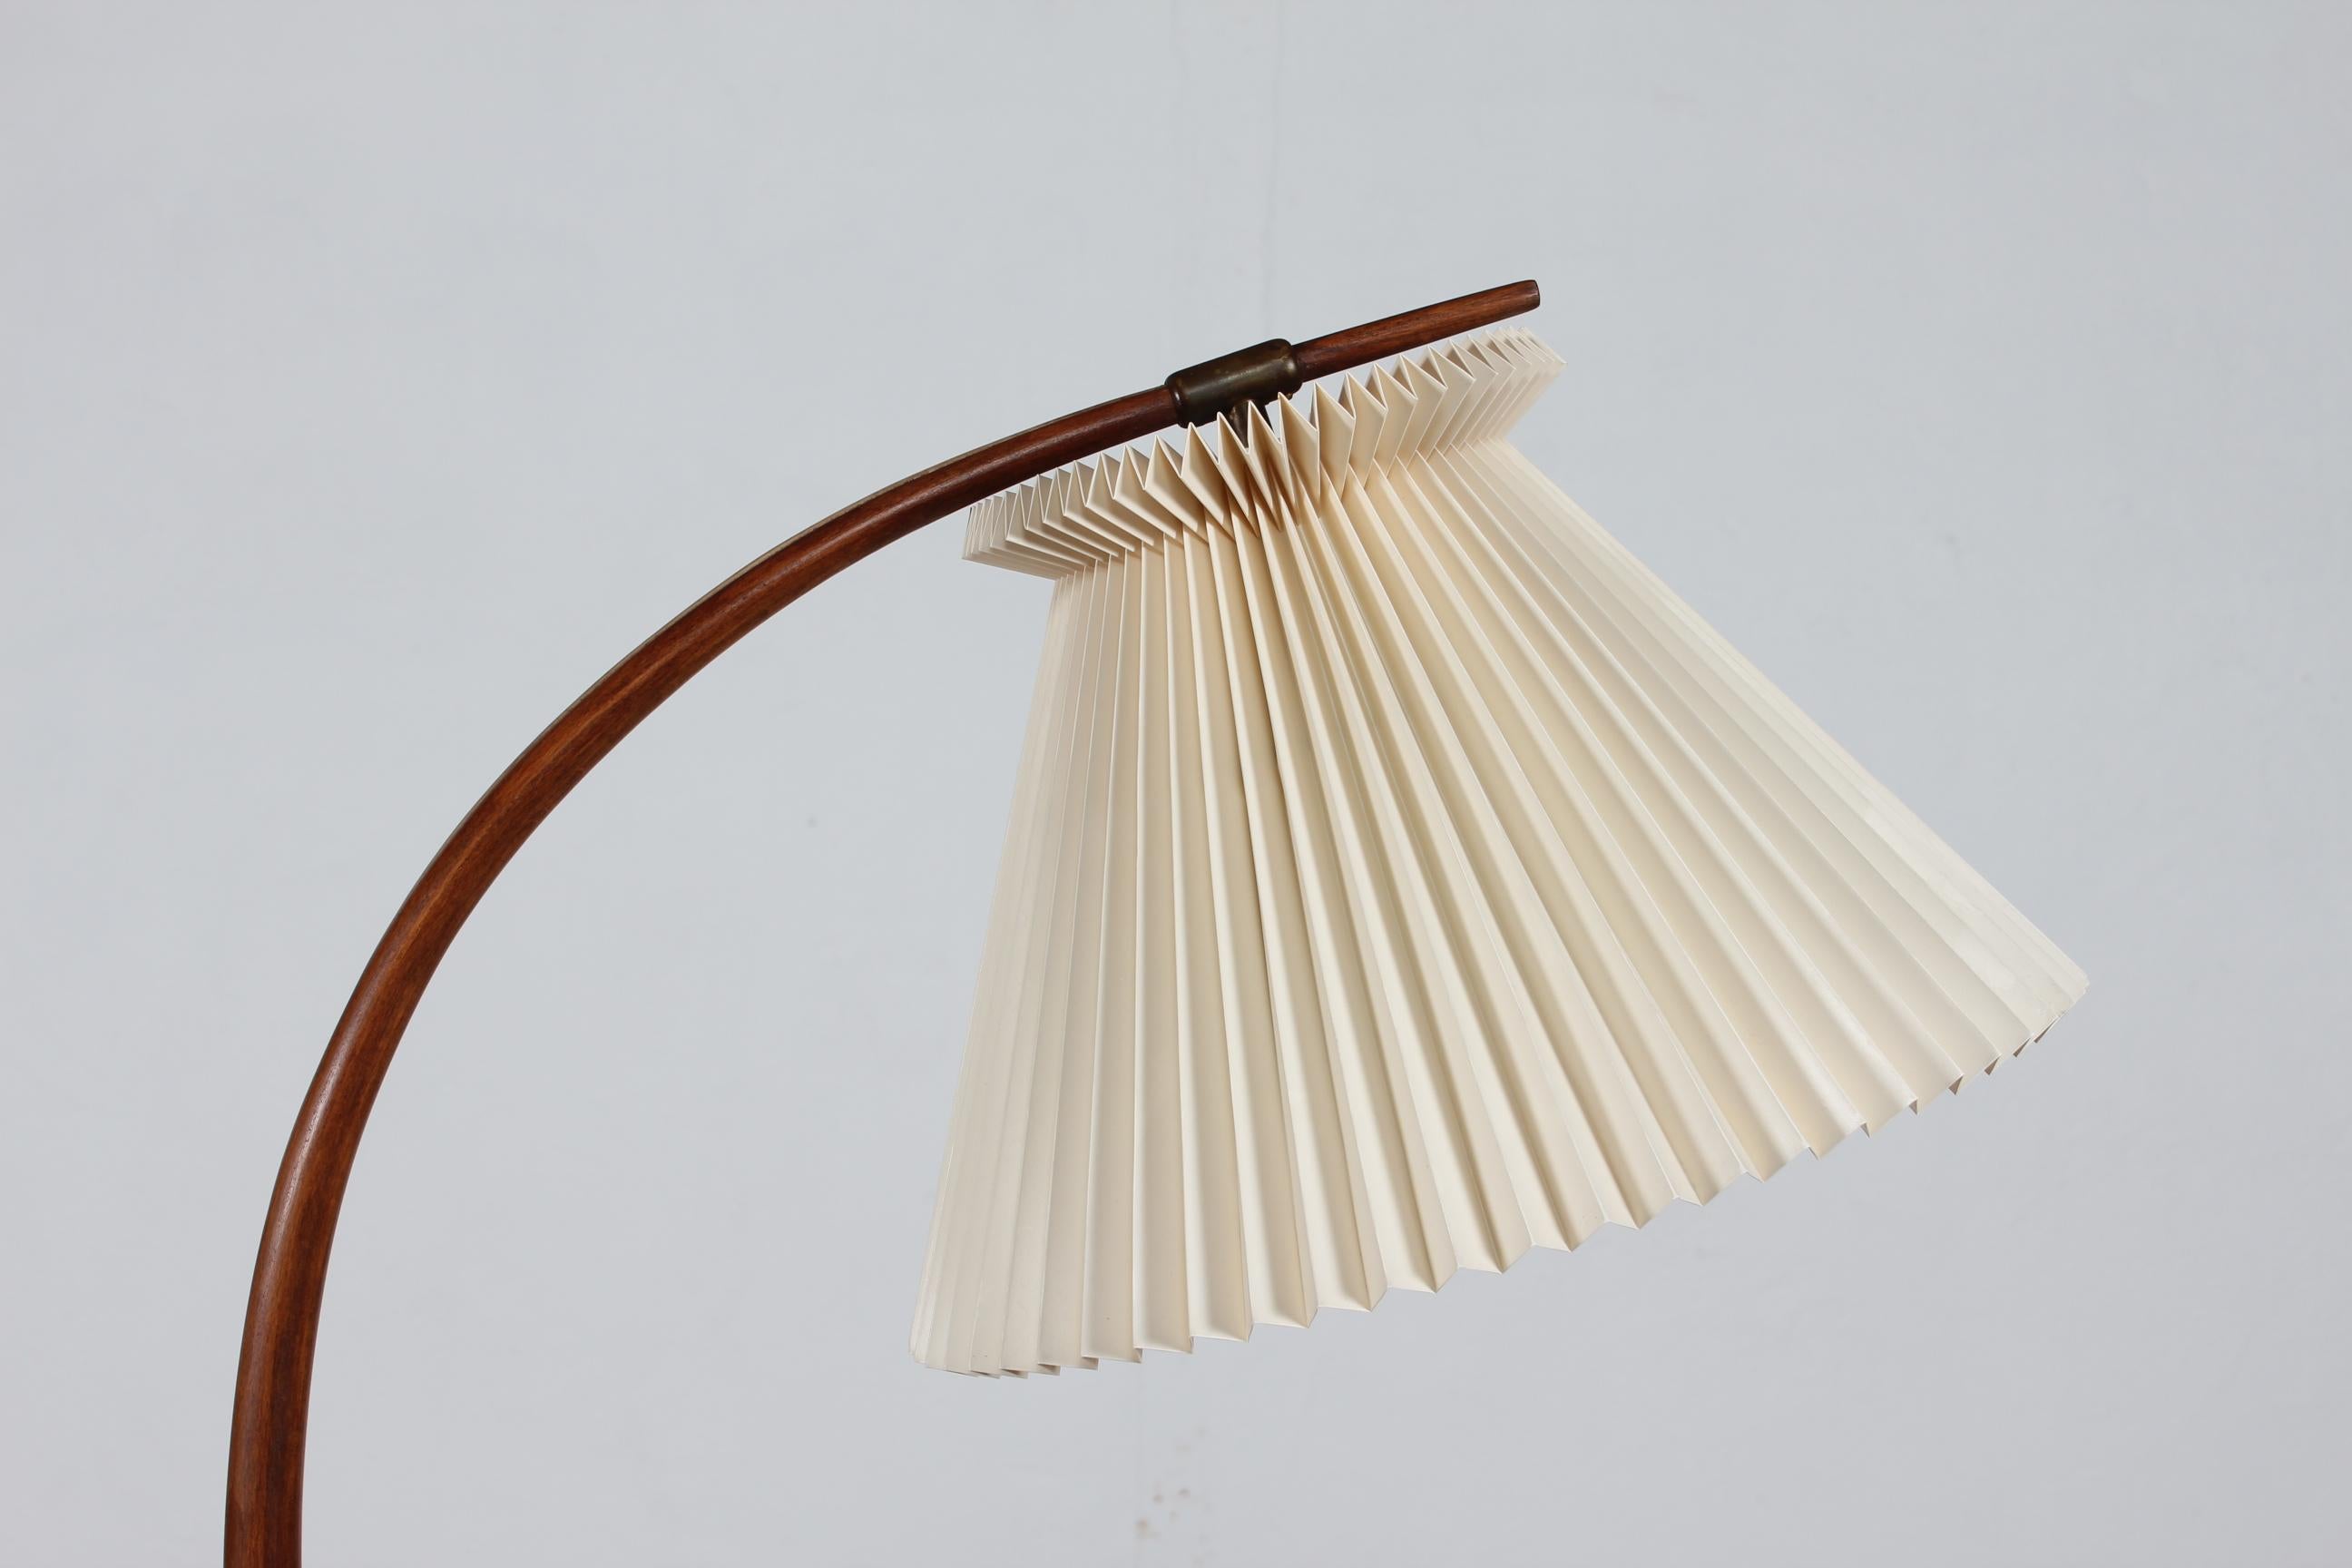 Lámpara de pie trípode de brige Severin Hansen Jr. fabricada por Haslev Møbelsnedkeri en Dinamarca en los años 50
La base de la lámpara es de haya teñida con herrajes de latón montados con la pantalla original de Le Klilnt doblada a mano.
El